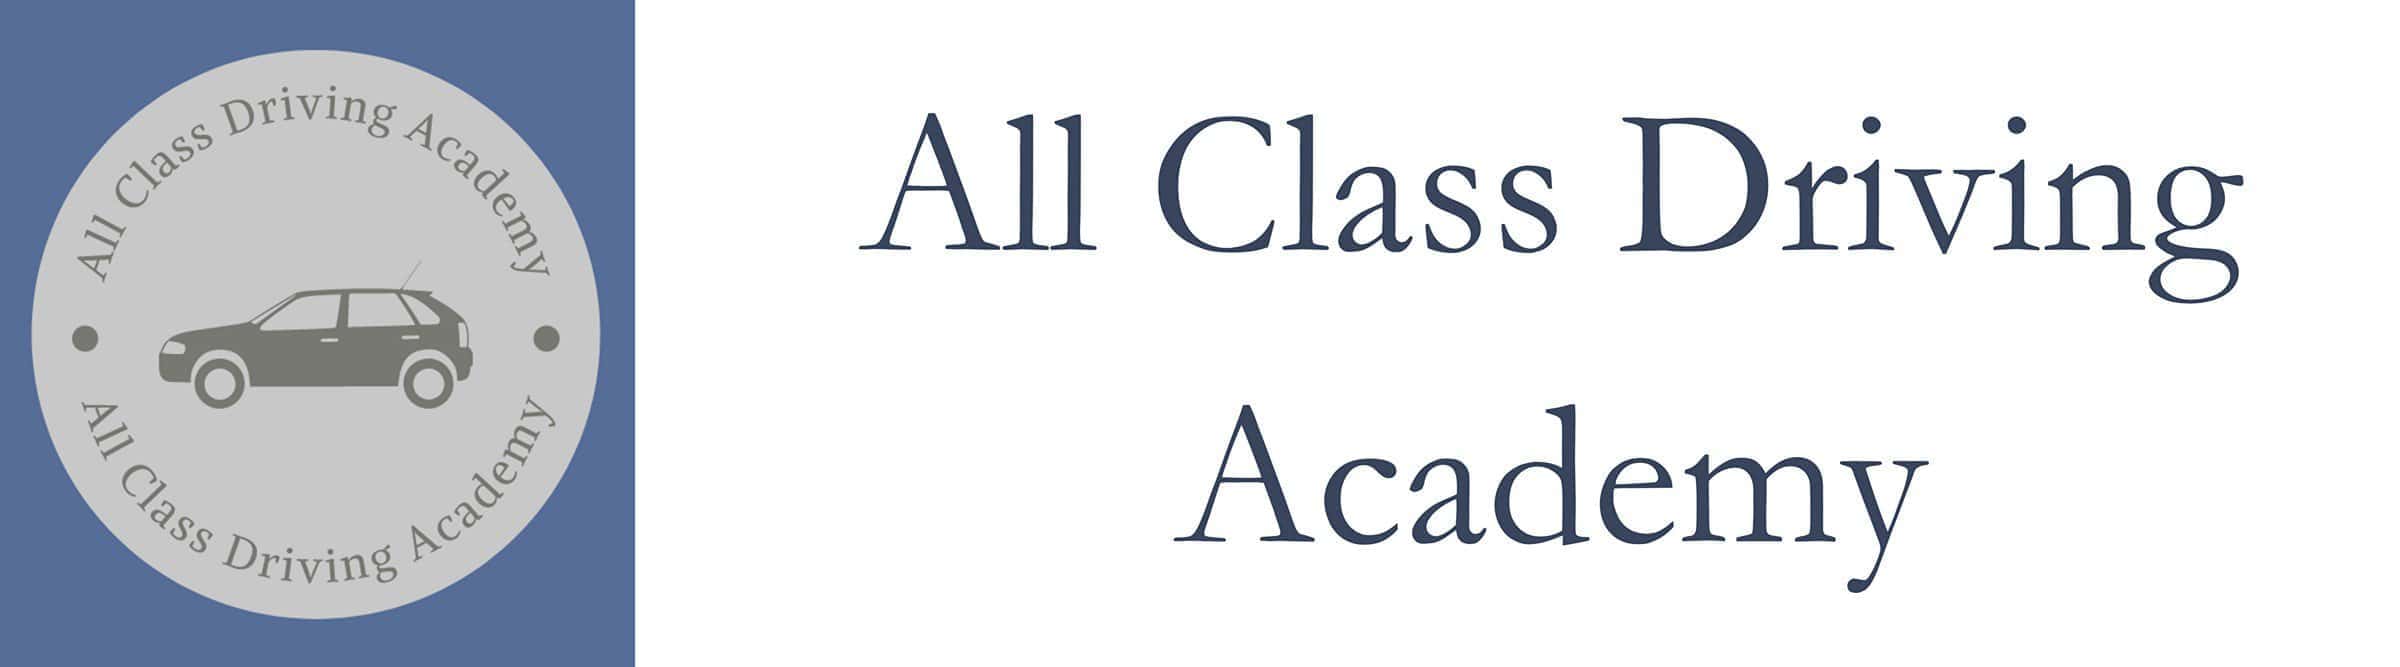 All Class Driving Academy Logo